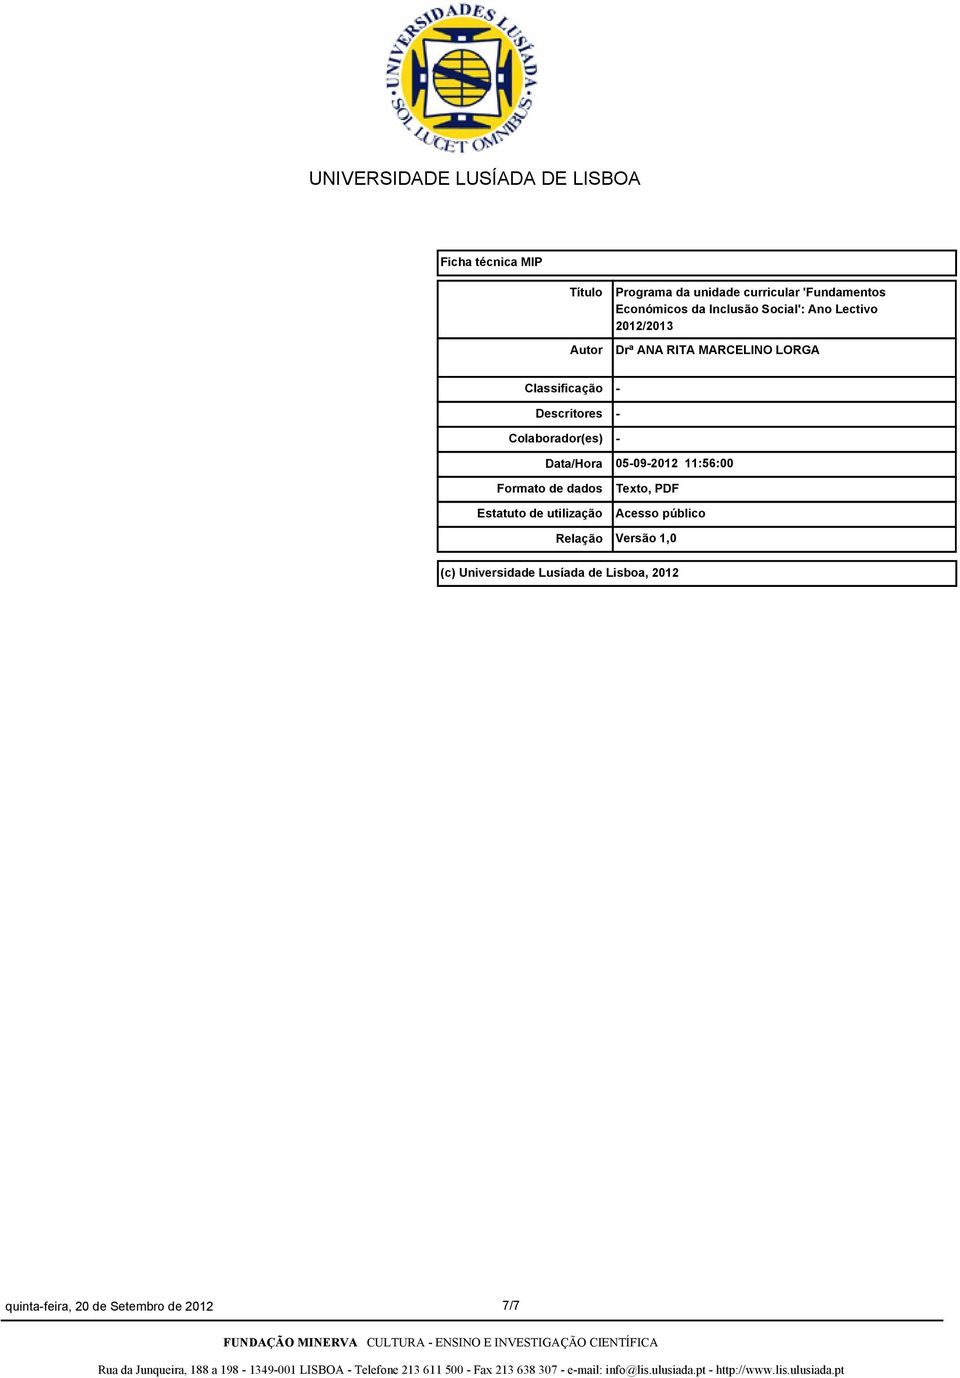 Colaborador(es) Data/Hora Formato de dados Estatuto de utilização Relação - - - 05-09-2012